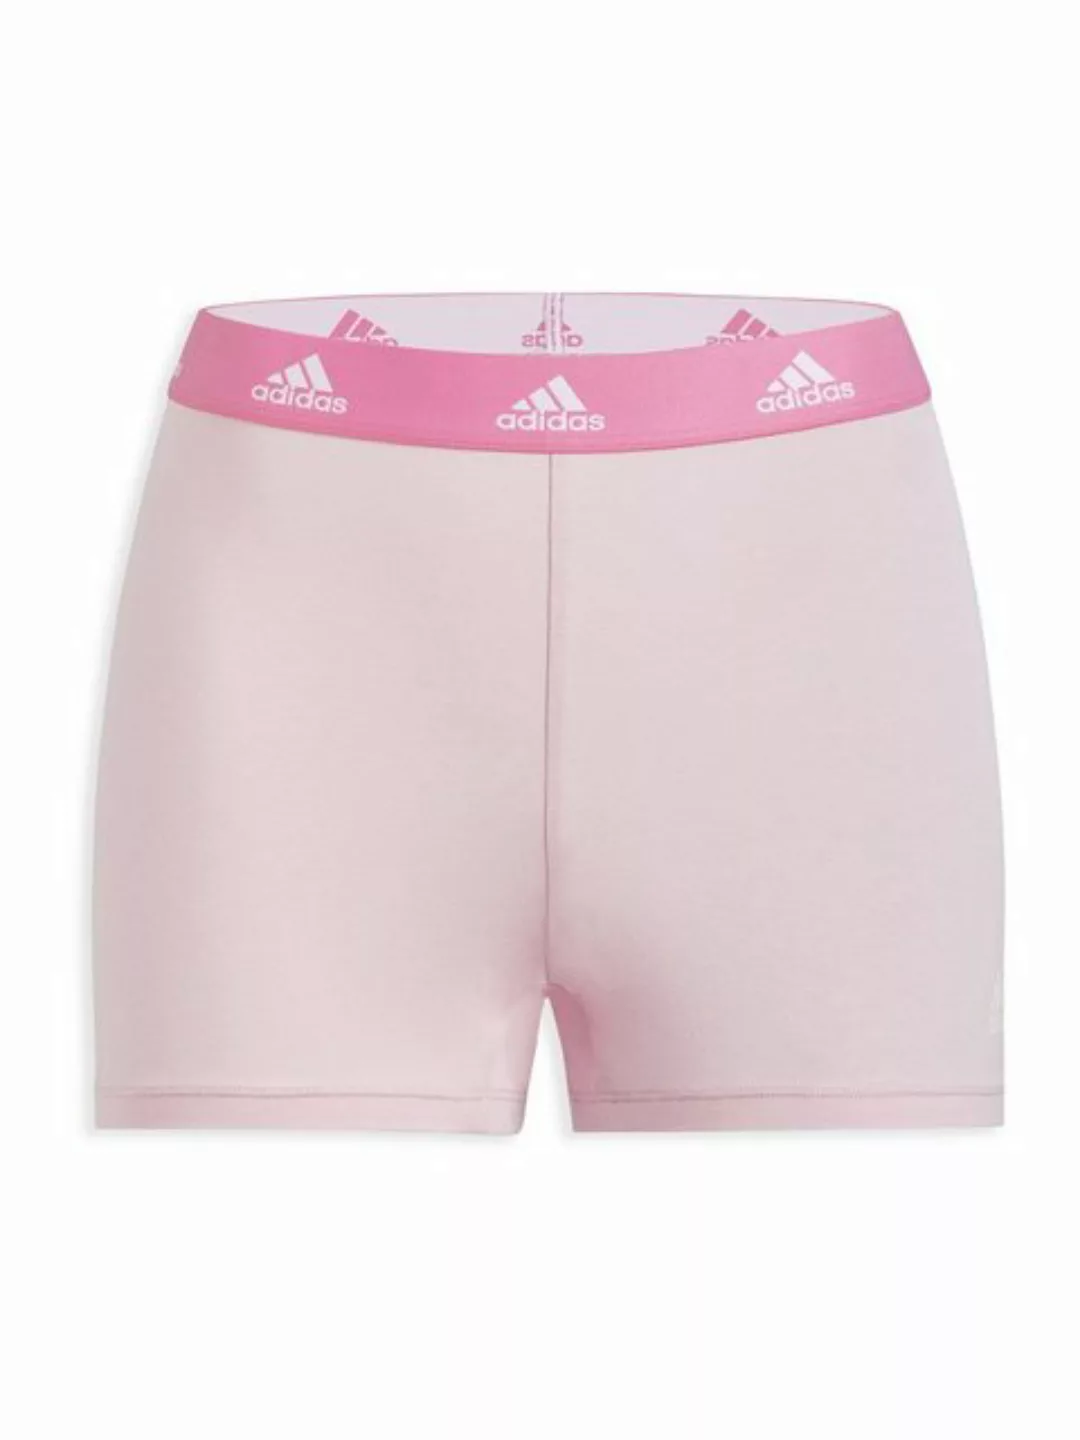 adidas Sportswear Shorts Sport Active Comfort Cotton Bermudas Kurze Hose günstig online kaufen